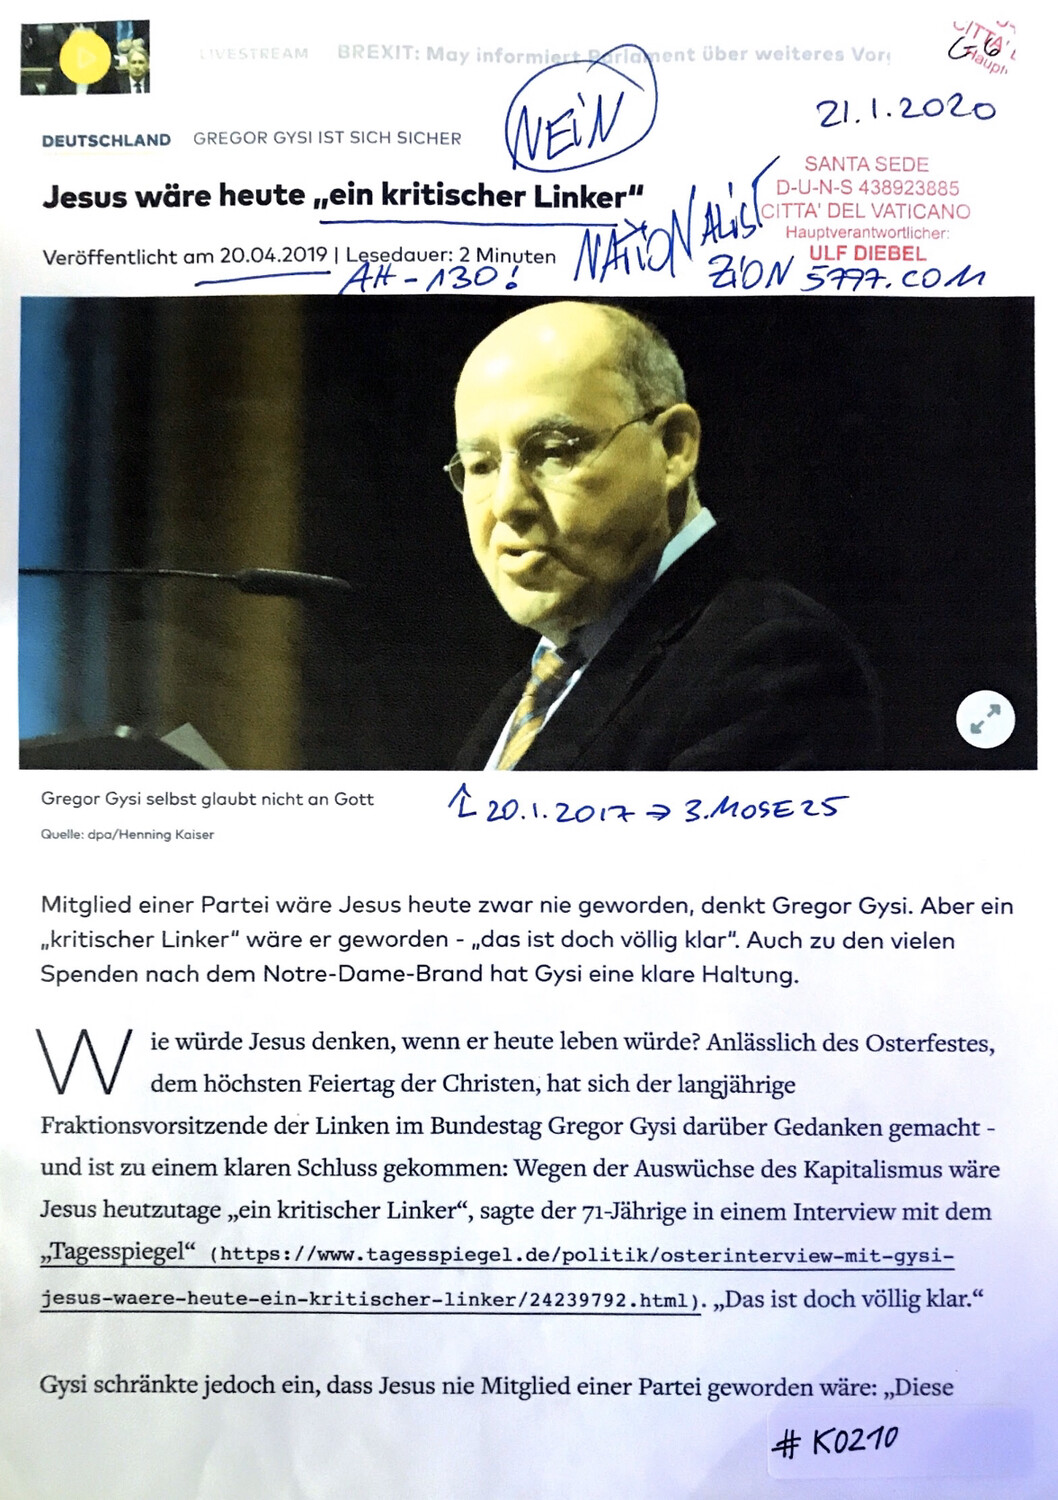 #K0210 l Deutschland - Gregor Gysi ist sich sicher l Jesus wäre heute “ein kritischer Linker”